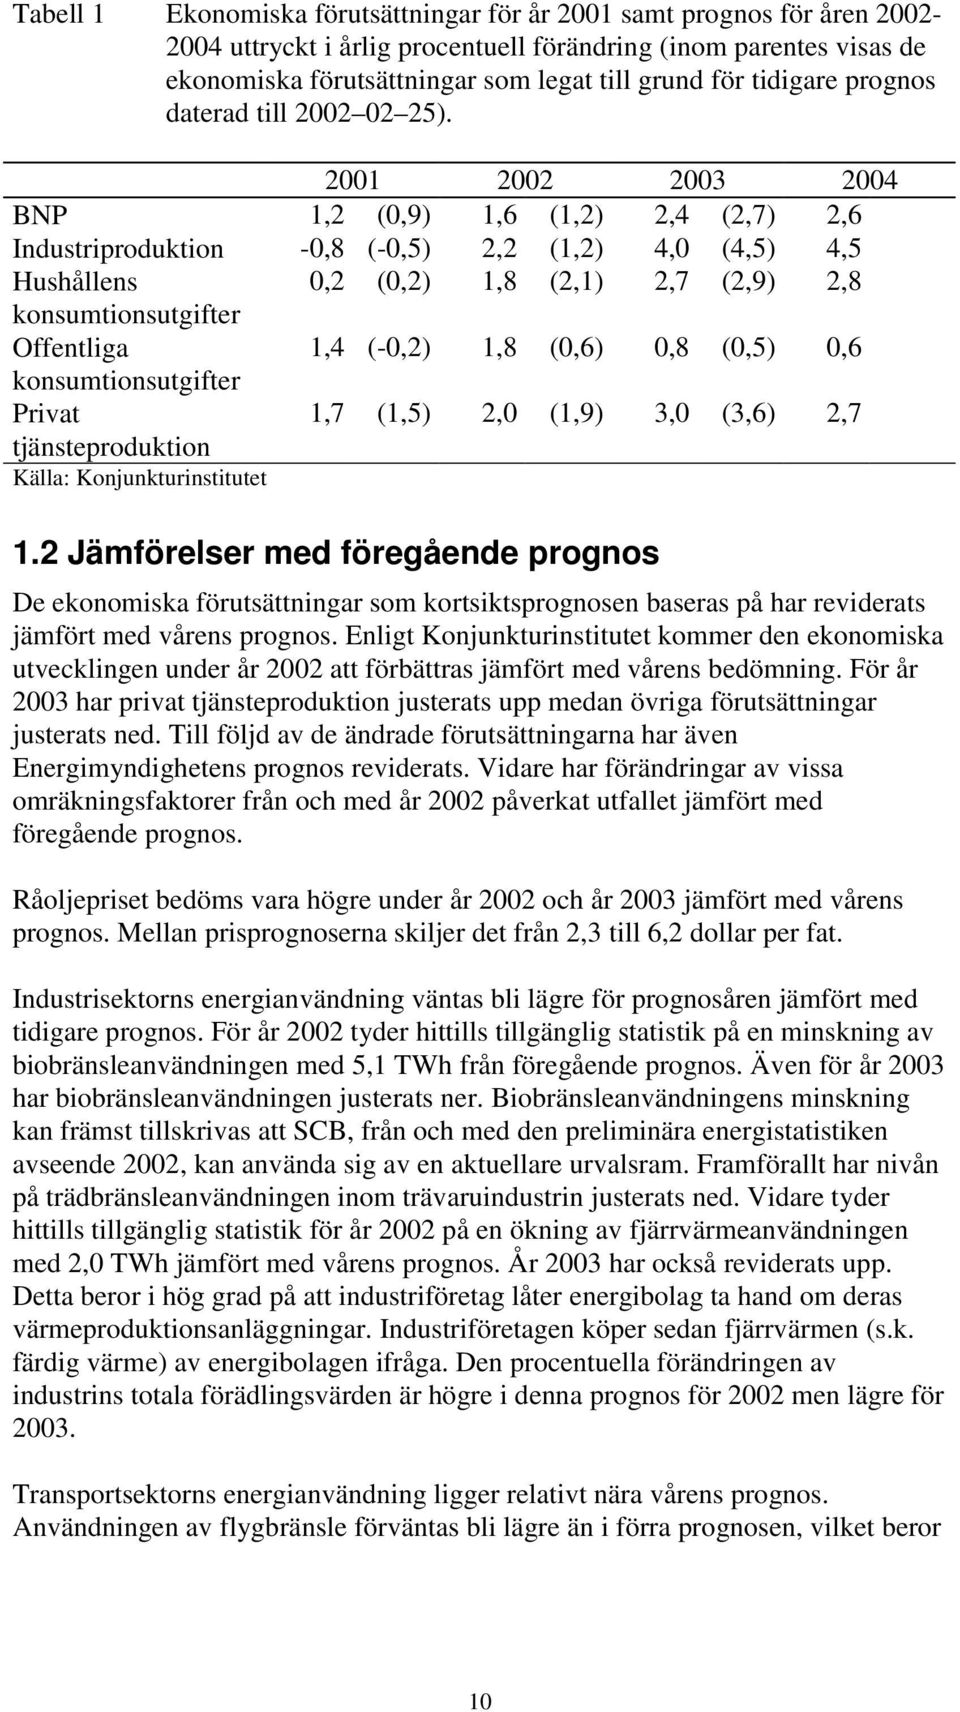 2001 2002 2003 2004 BNP 1,2 (0,9) 1,6 (1,2) 2,4 (2,7) 2,6 Industriproduktion -0,8 (-0,5) 2,2 (1,2) 4,0 (4,5) 4,5 Hushållens 0,2 (0,2) 1,8 (2,1) 2,7 (2,9) 2,8 konsumtionsutgifter Offentliga 1,4 (-0,2)